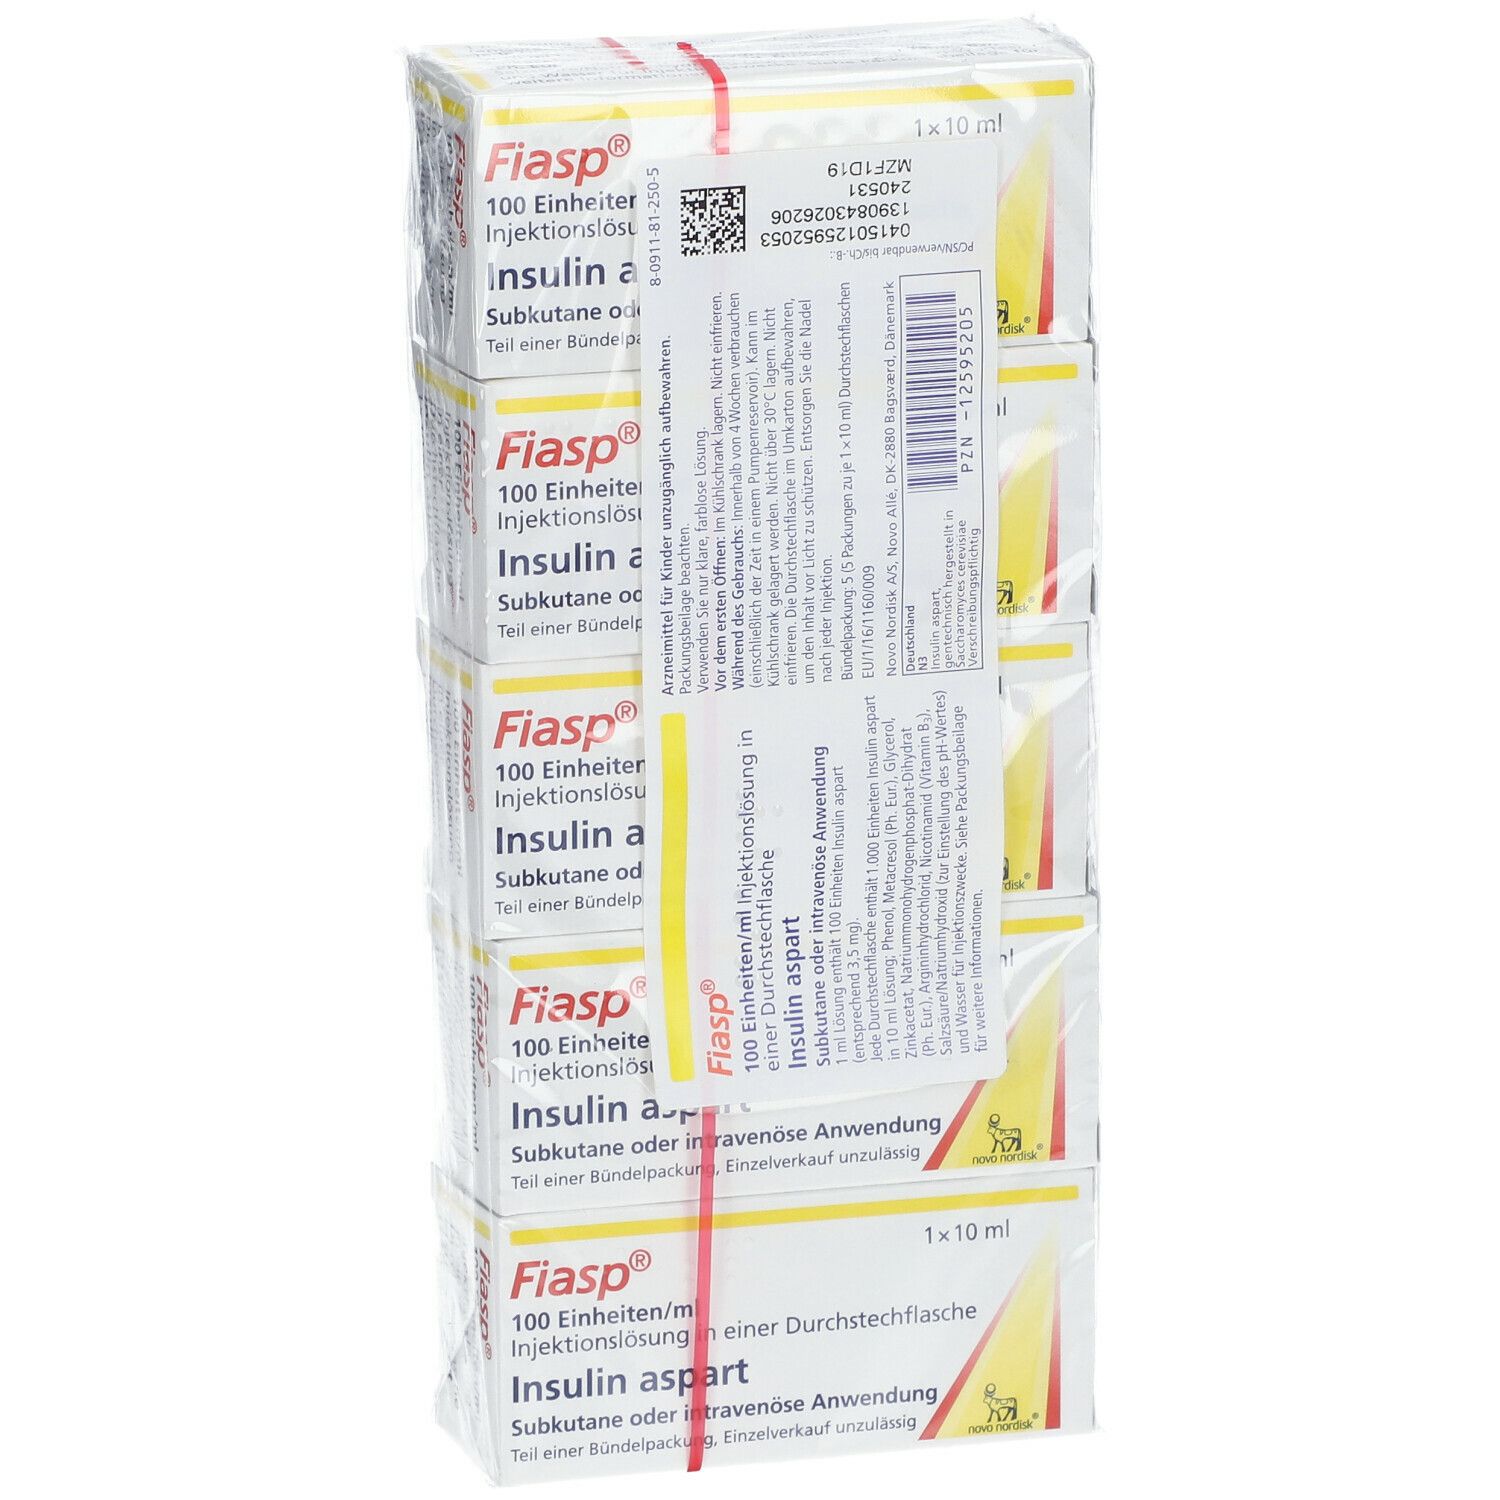 Fiasp® 100 Einheiten/ml